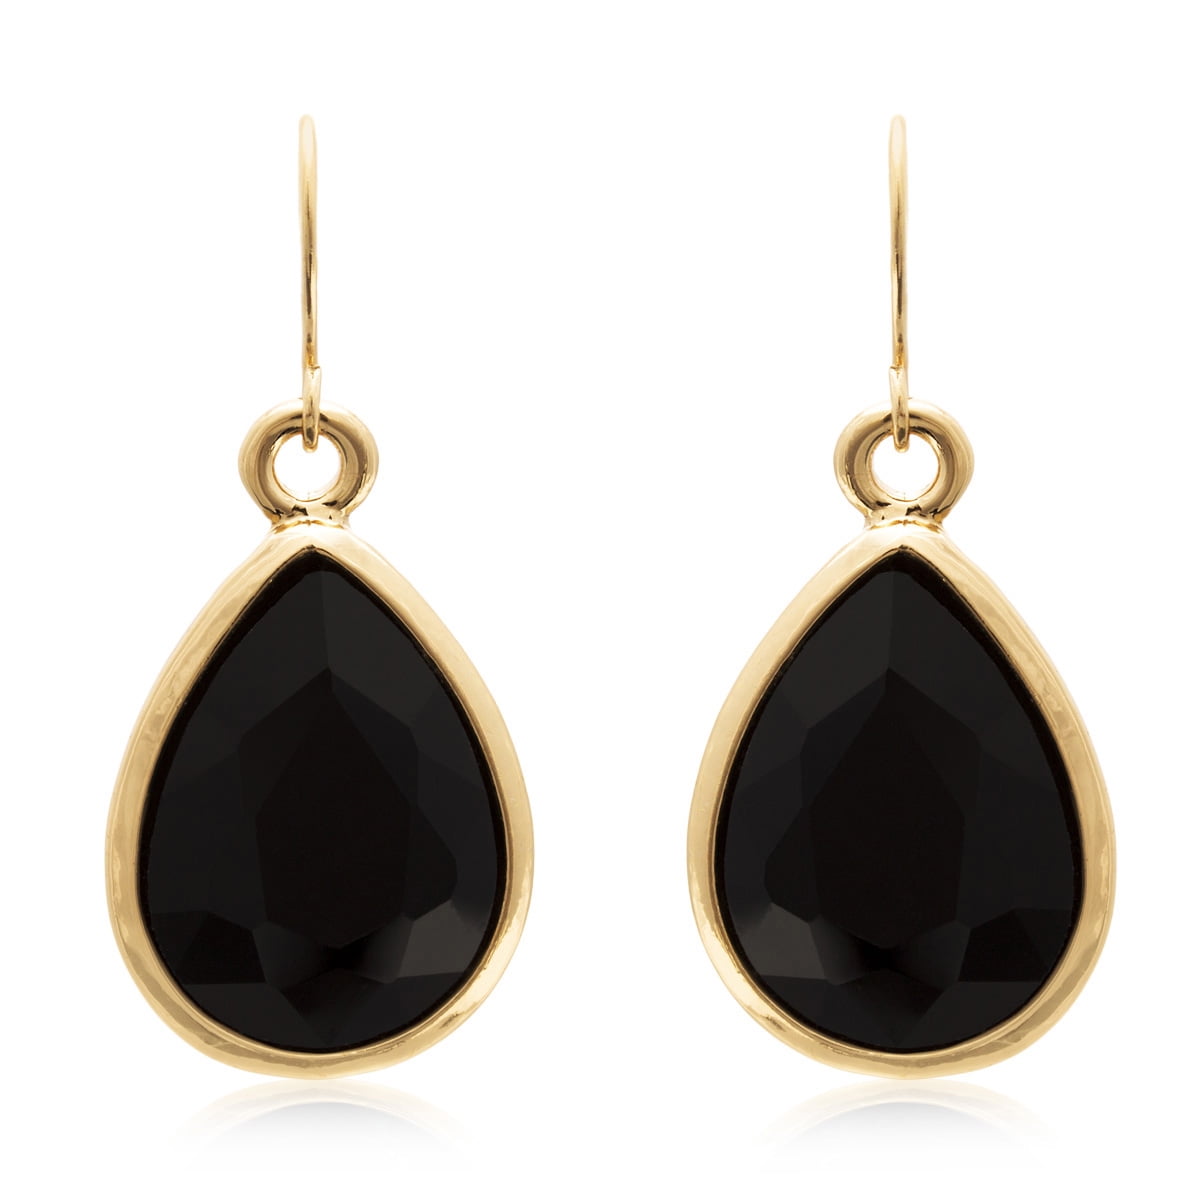 14K Yellow Gold Fancy Cut Pear Shaped Black Onyx Dangling Earrings